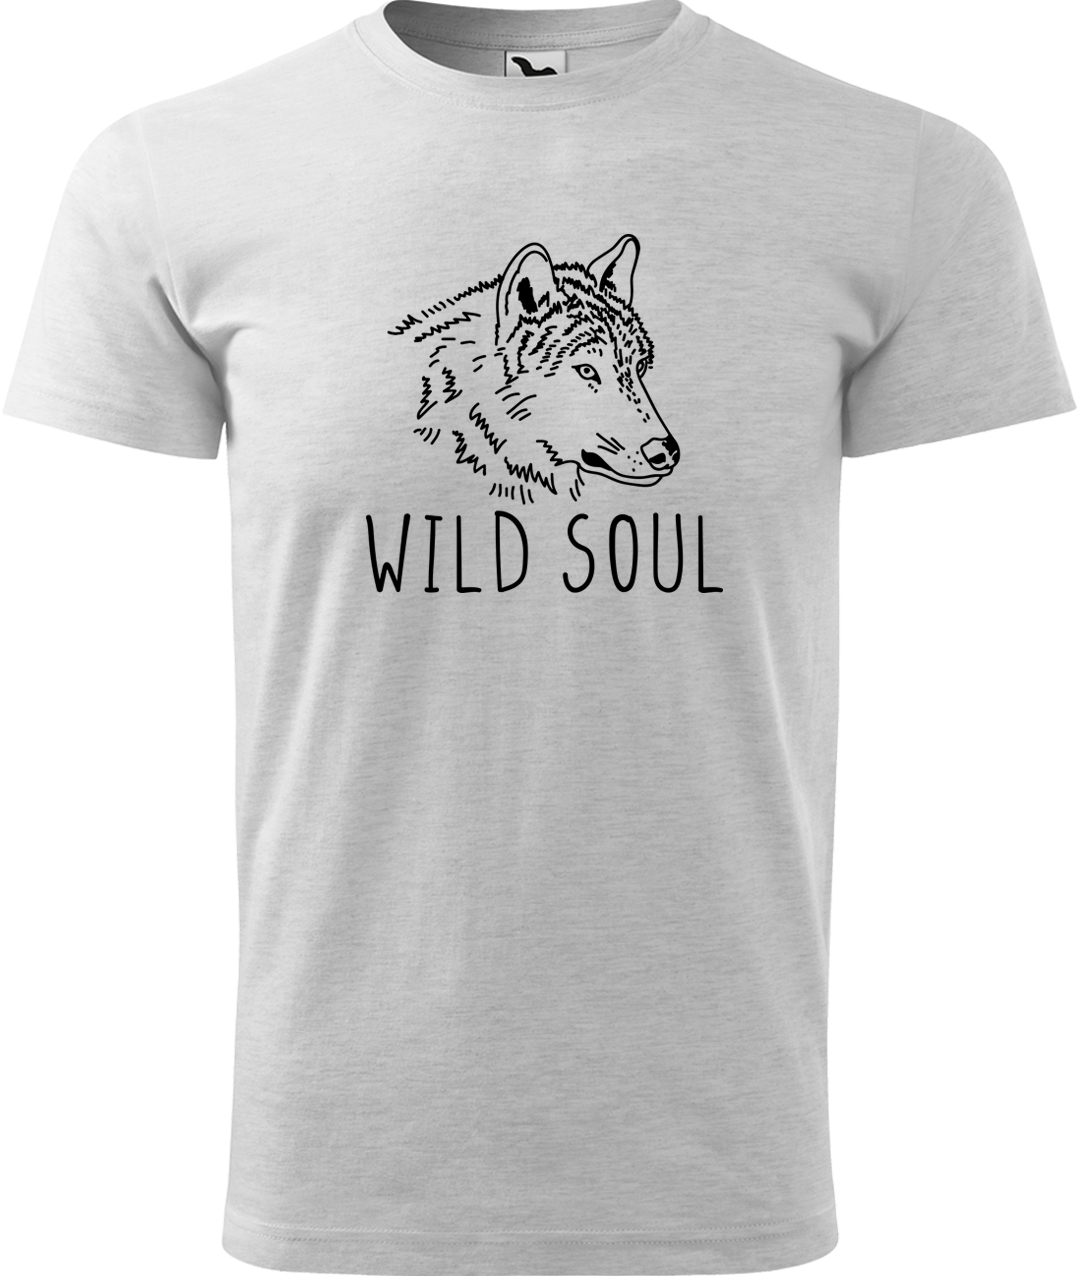 Pánské tričko s vlkem - Wild soul Velikost: S, Barva: Světle šedý melír (03), Střih: pánský